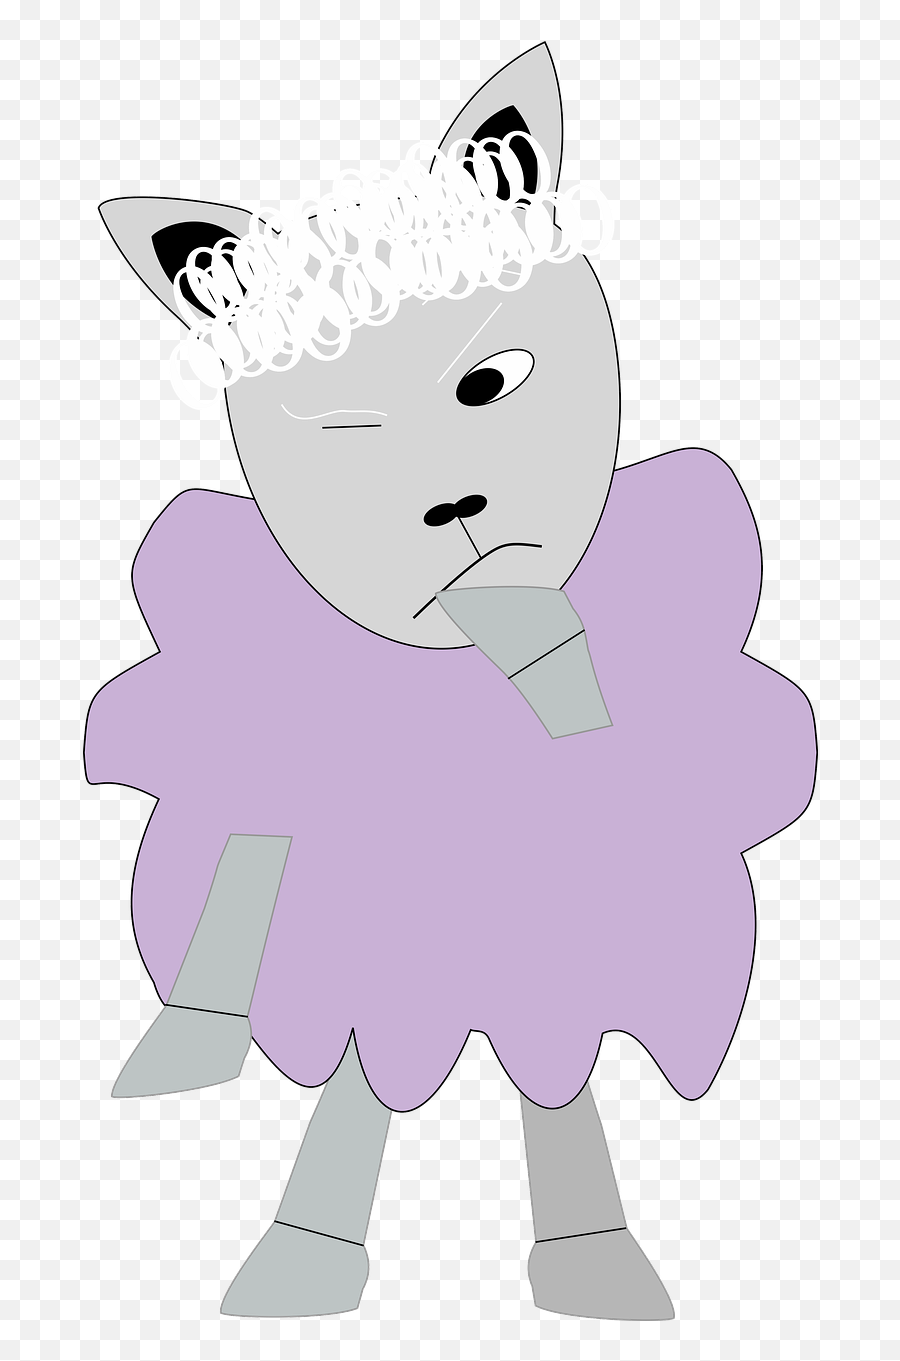 Sheep Lamb Emoji - Free Image On Pixabay Sheep Png,Worried Emoji Png